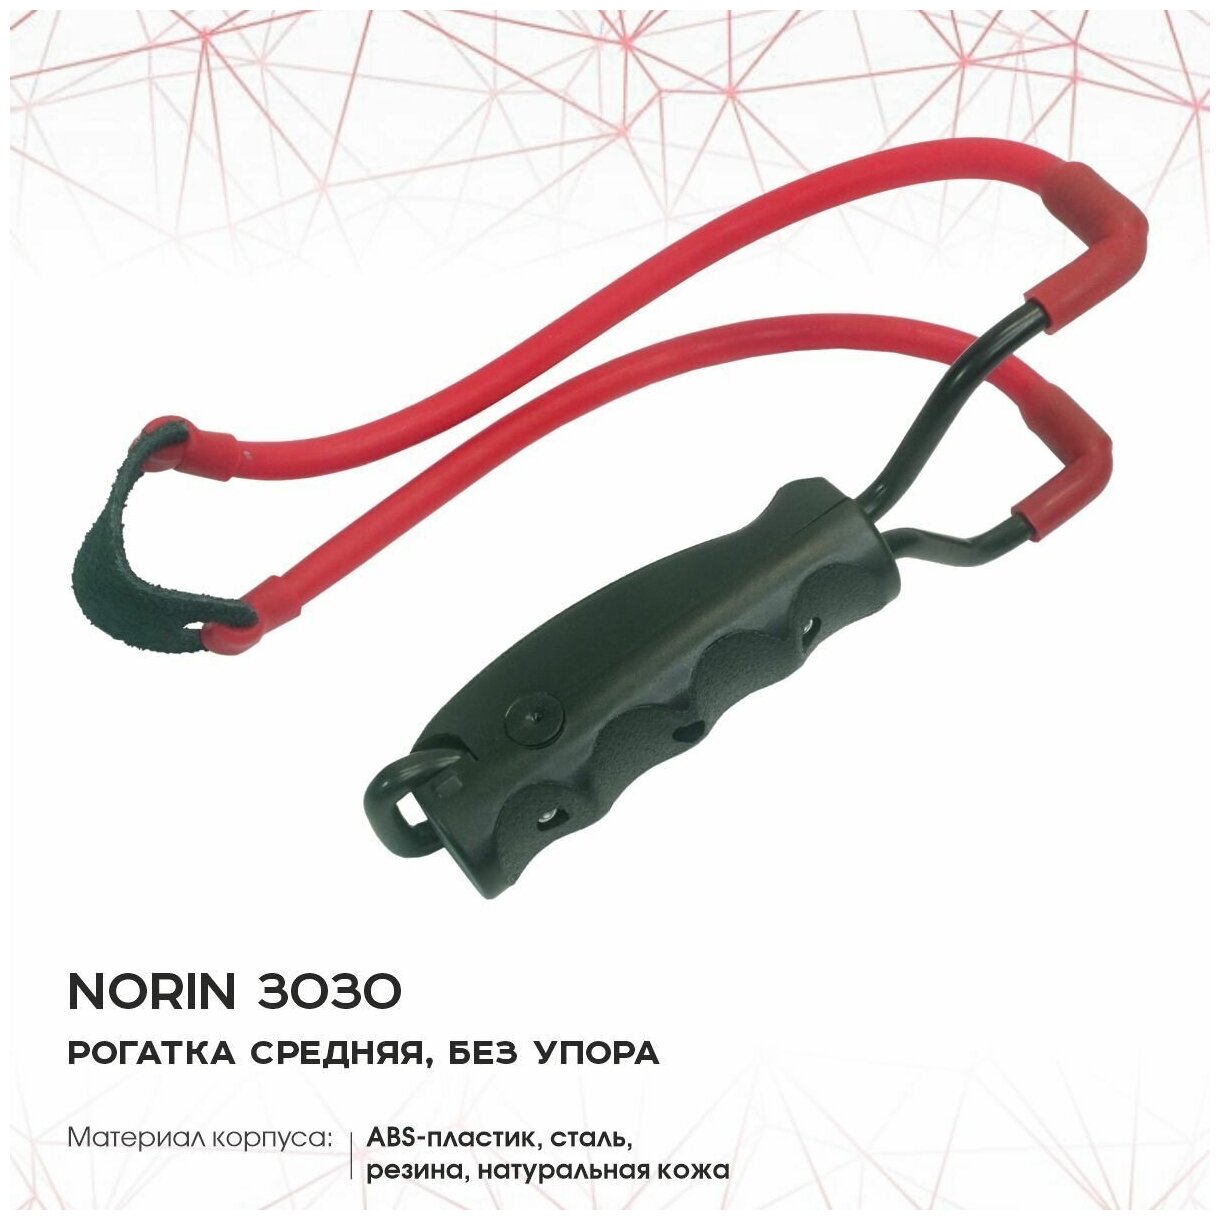 Рогатка "Norin 3030", средняя (без упора)